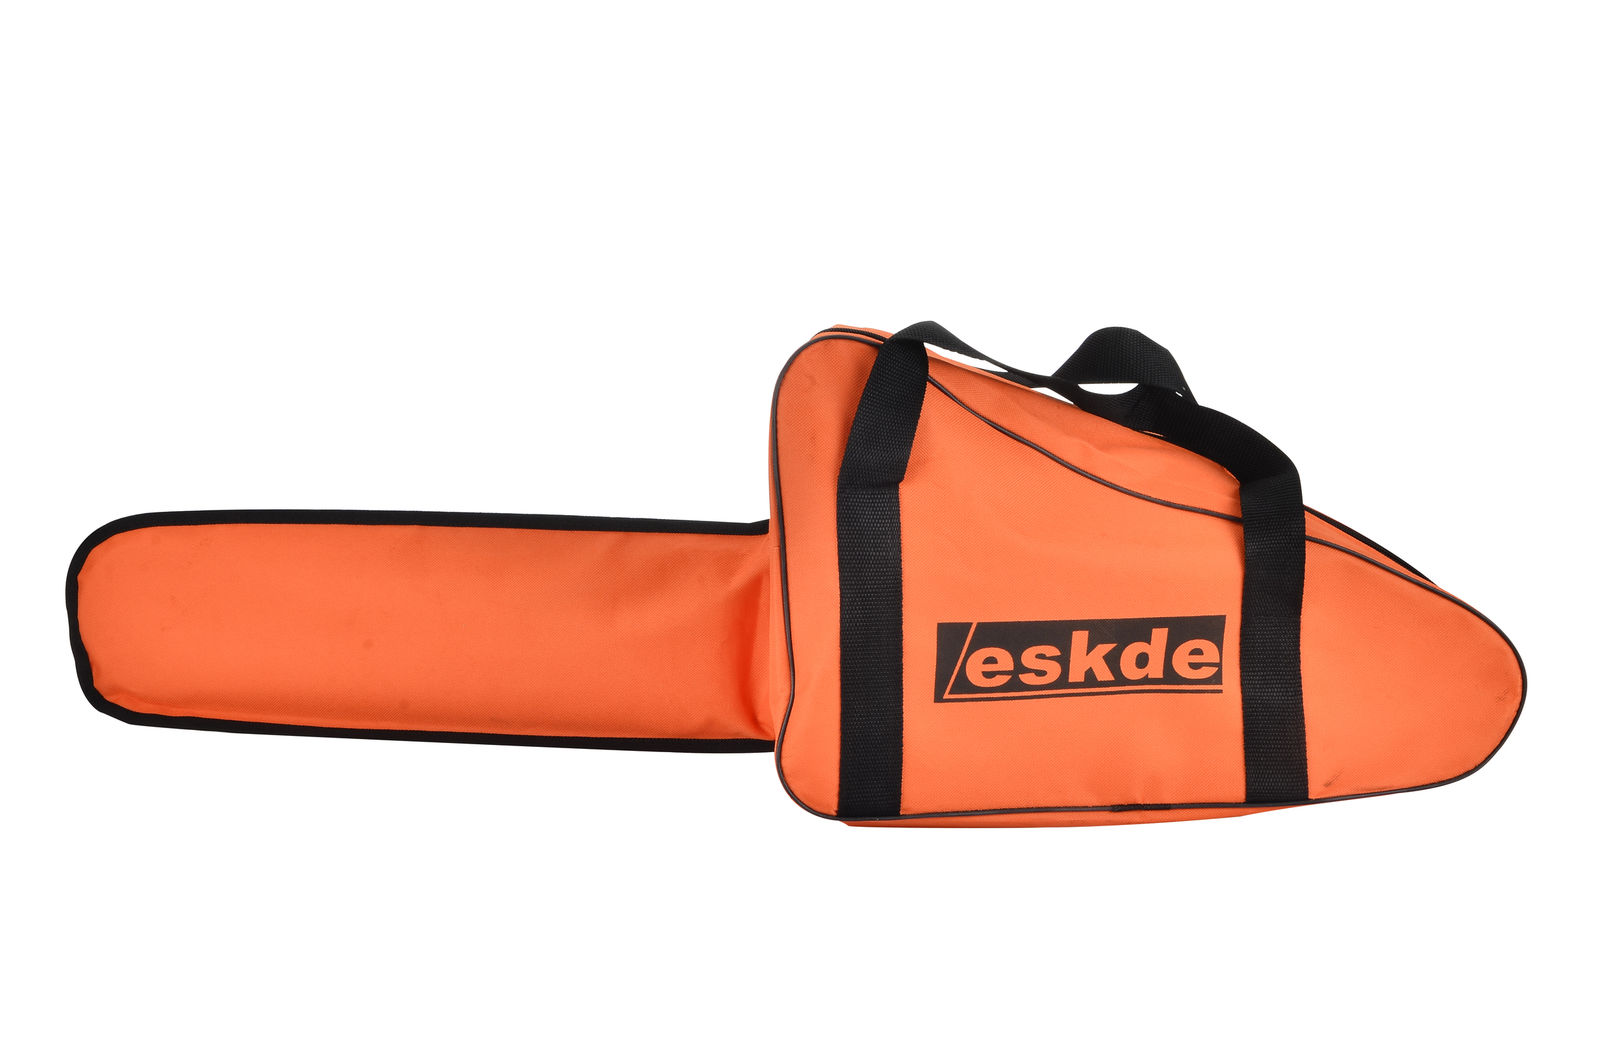 eSkde CS58-S7 Petrol Chainsaw 3.4HP Bar 2 Chains Bag Cover Accessories Orange 